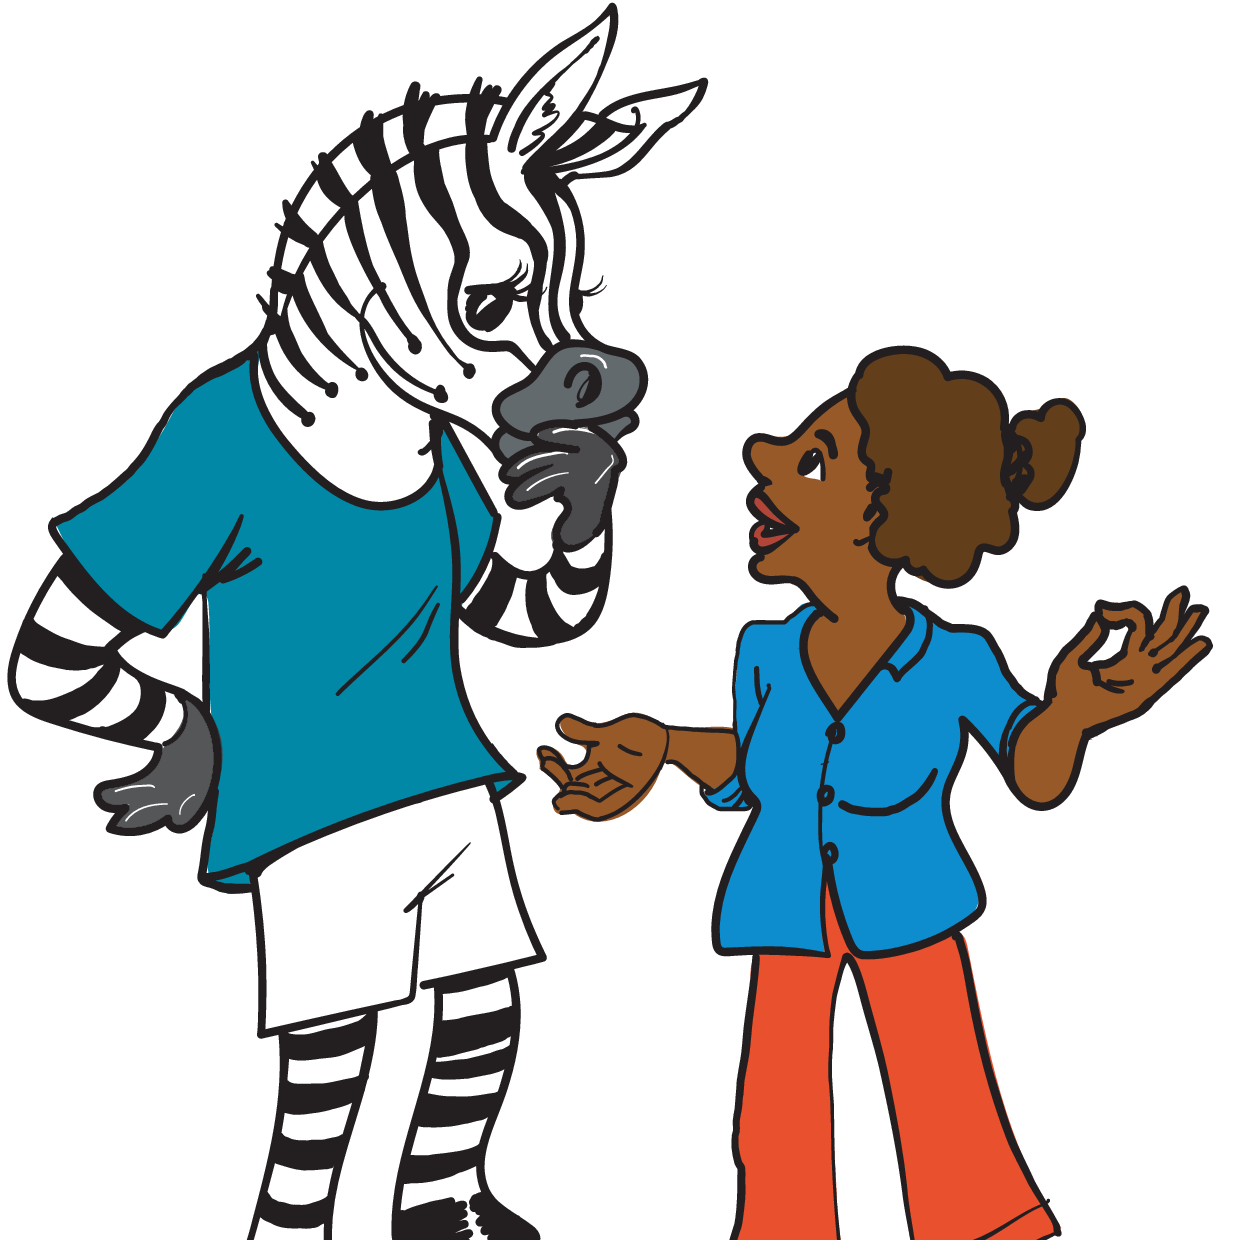 Illustration eines Zebras mit T-Shirt, das sich grübelnd mit einer Person unterhält